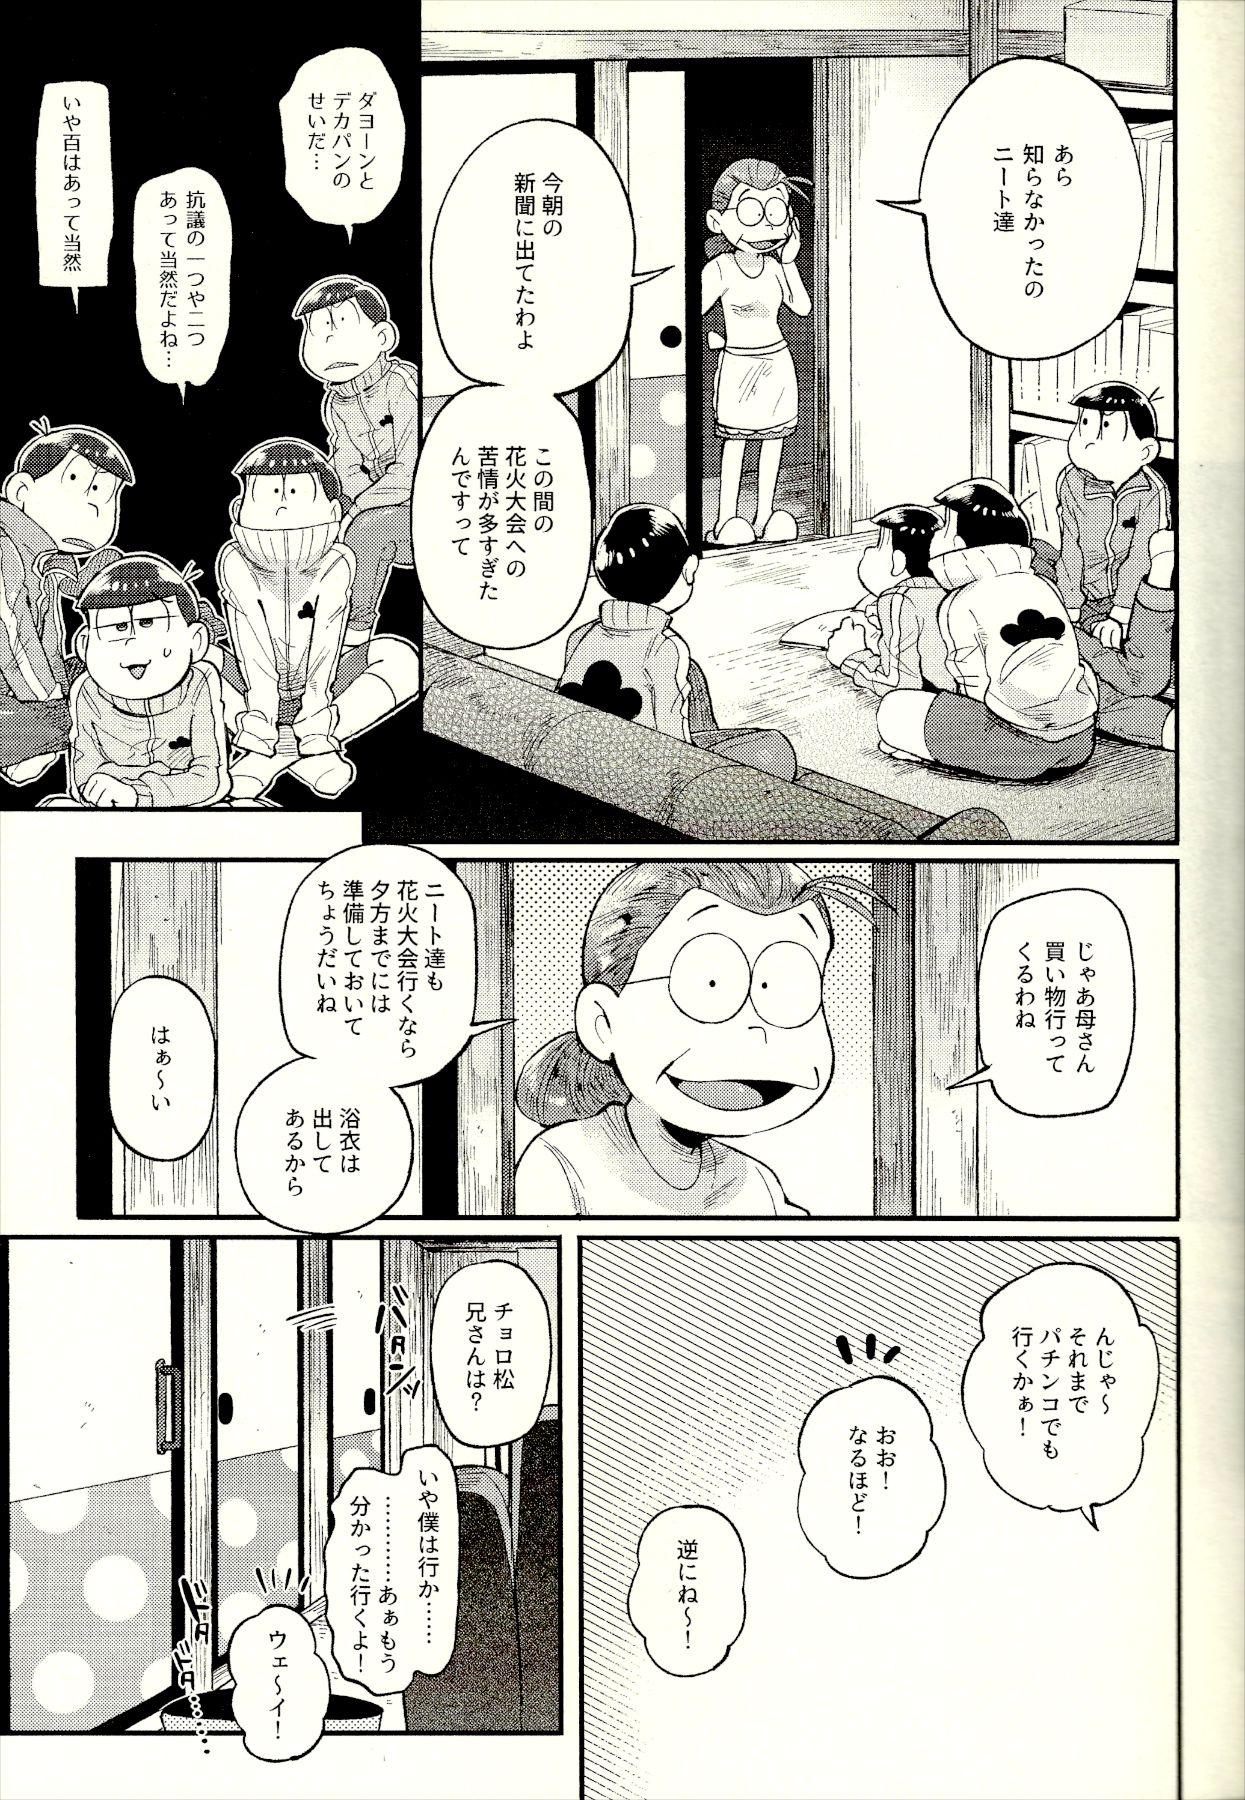 Pussy Orgasm Season in the Summer - Osomatsu-san Boob - Page 5